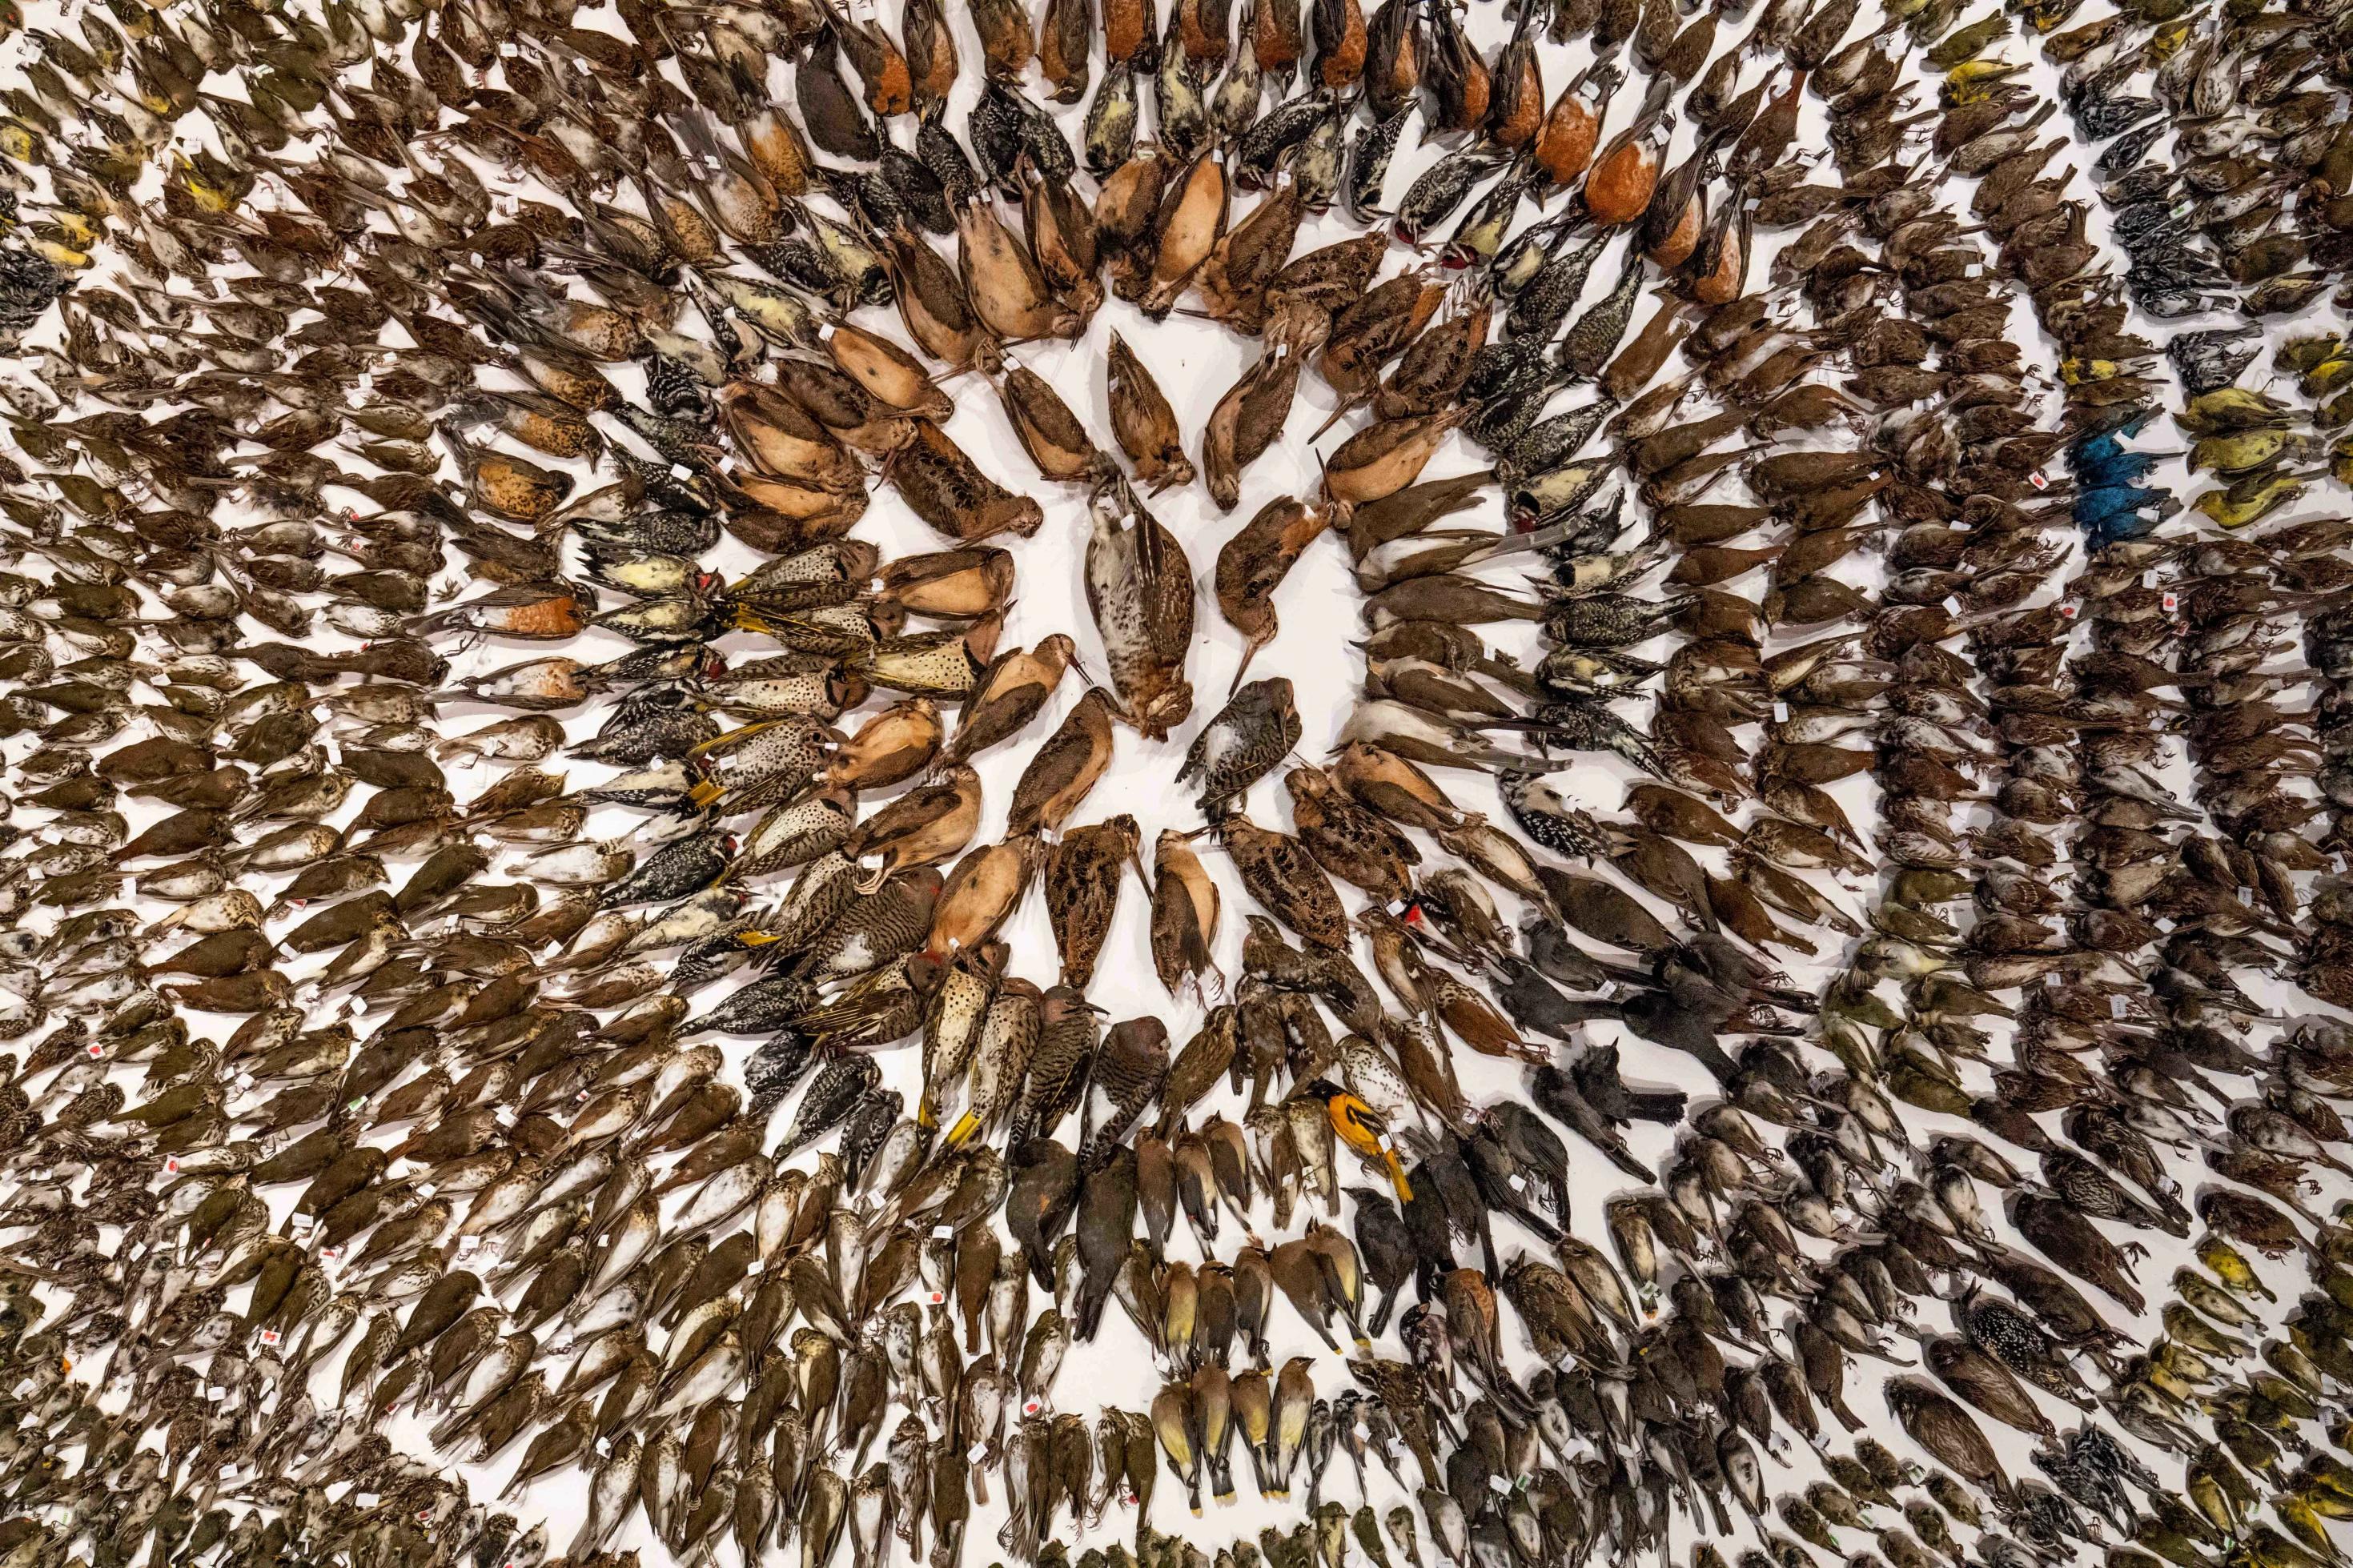 Rund 2000 tote Vögel sind in einem kreisförmigen Arrangement auf einer Ausstellungsfläche arrangiert.